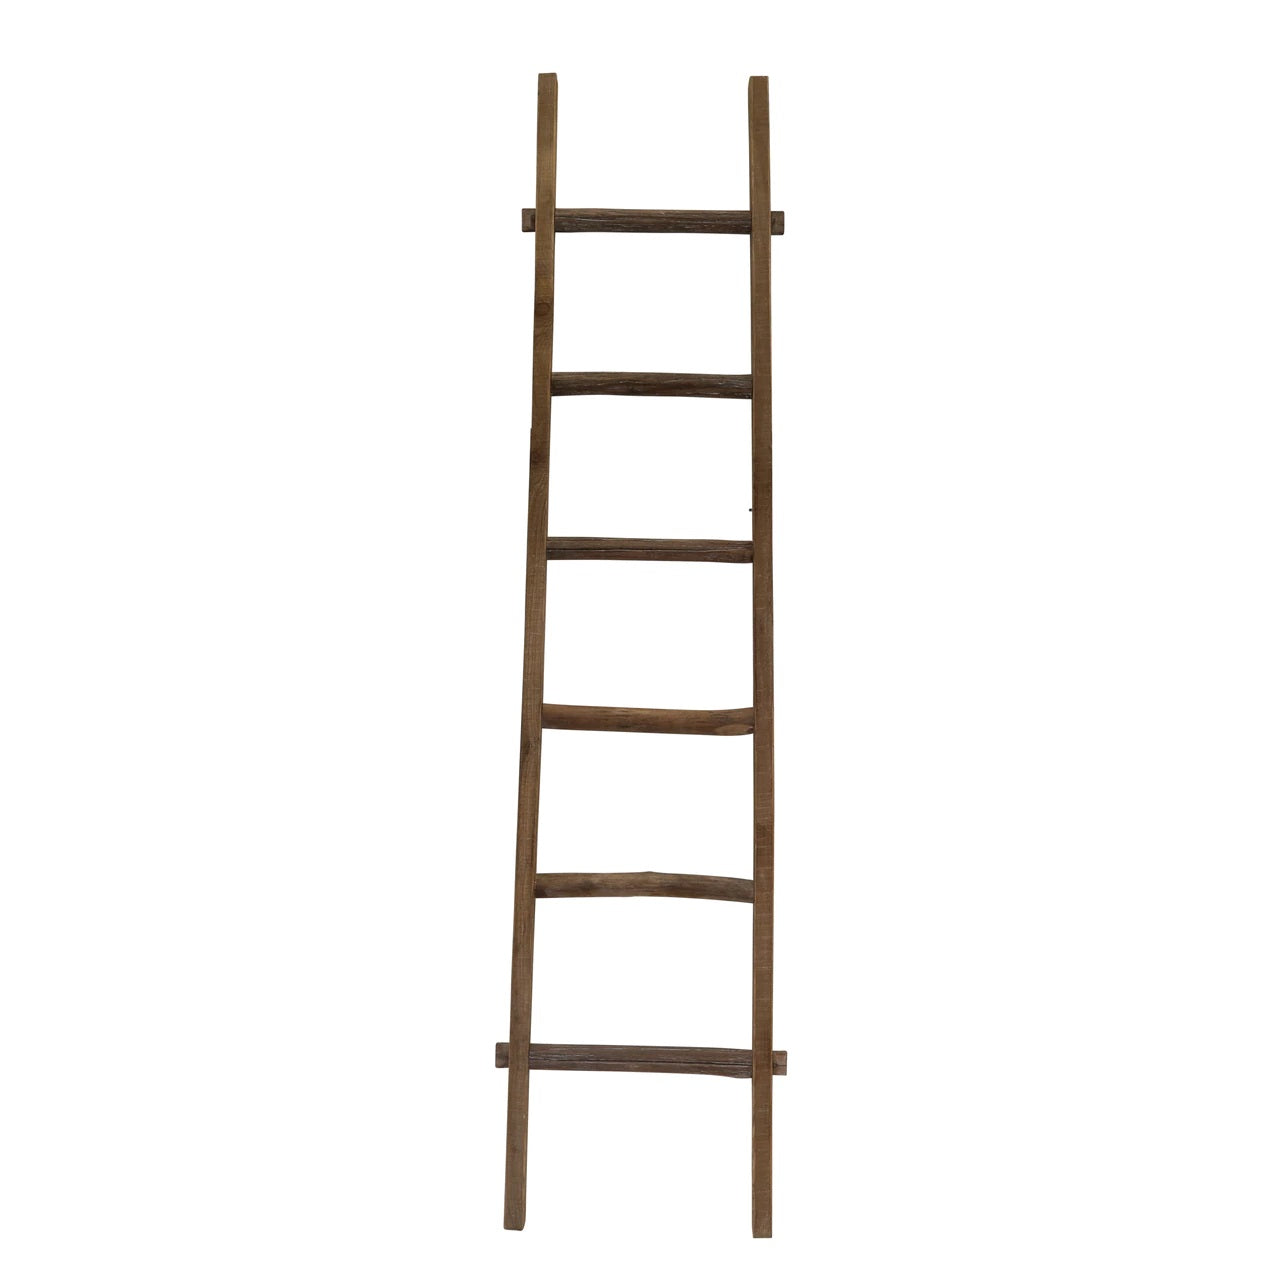 76" Decorative Wooden Ladder